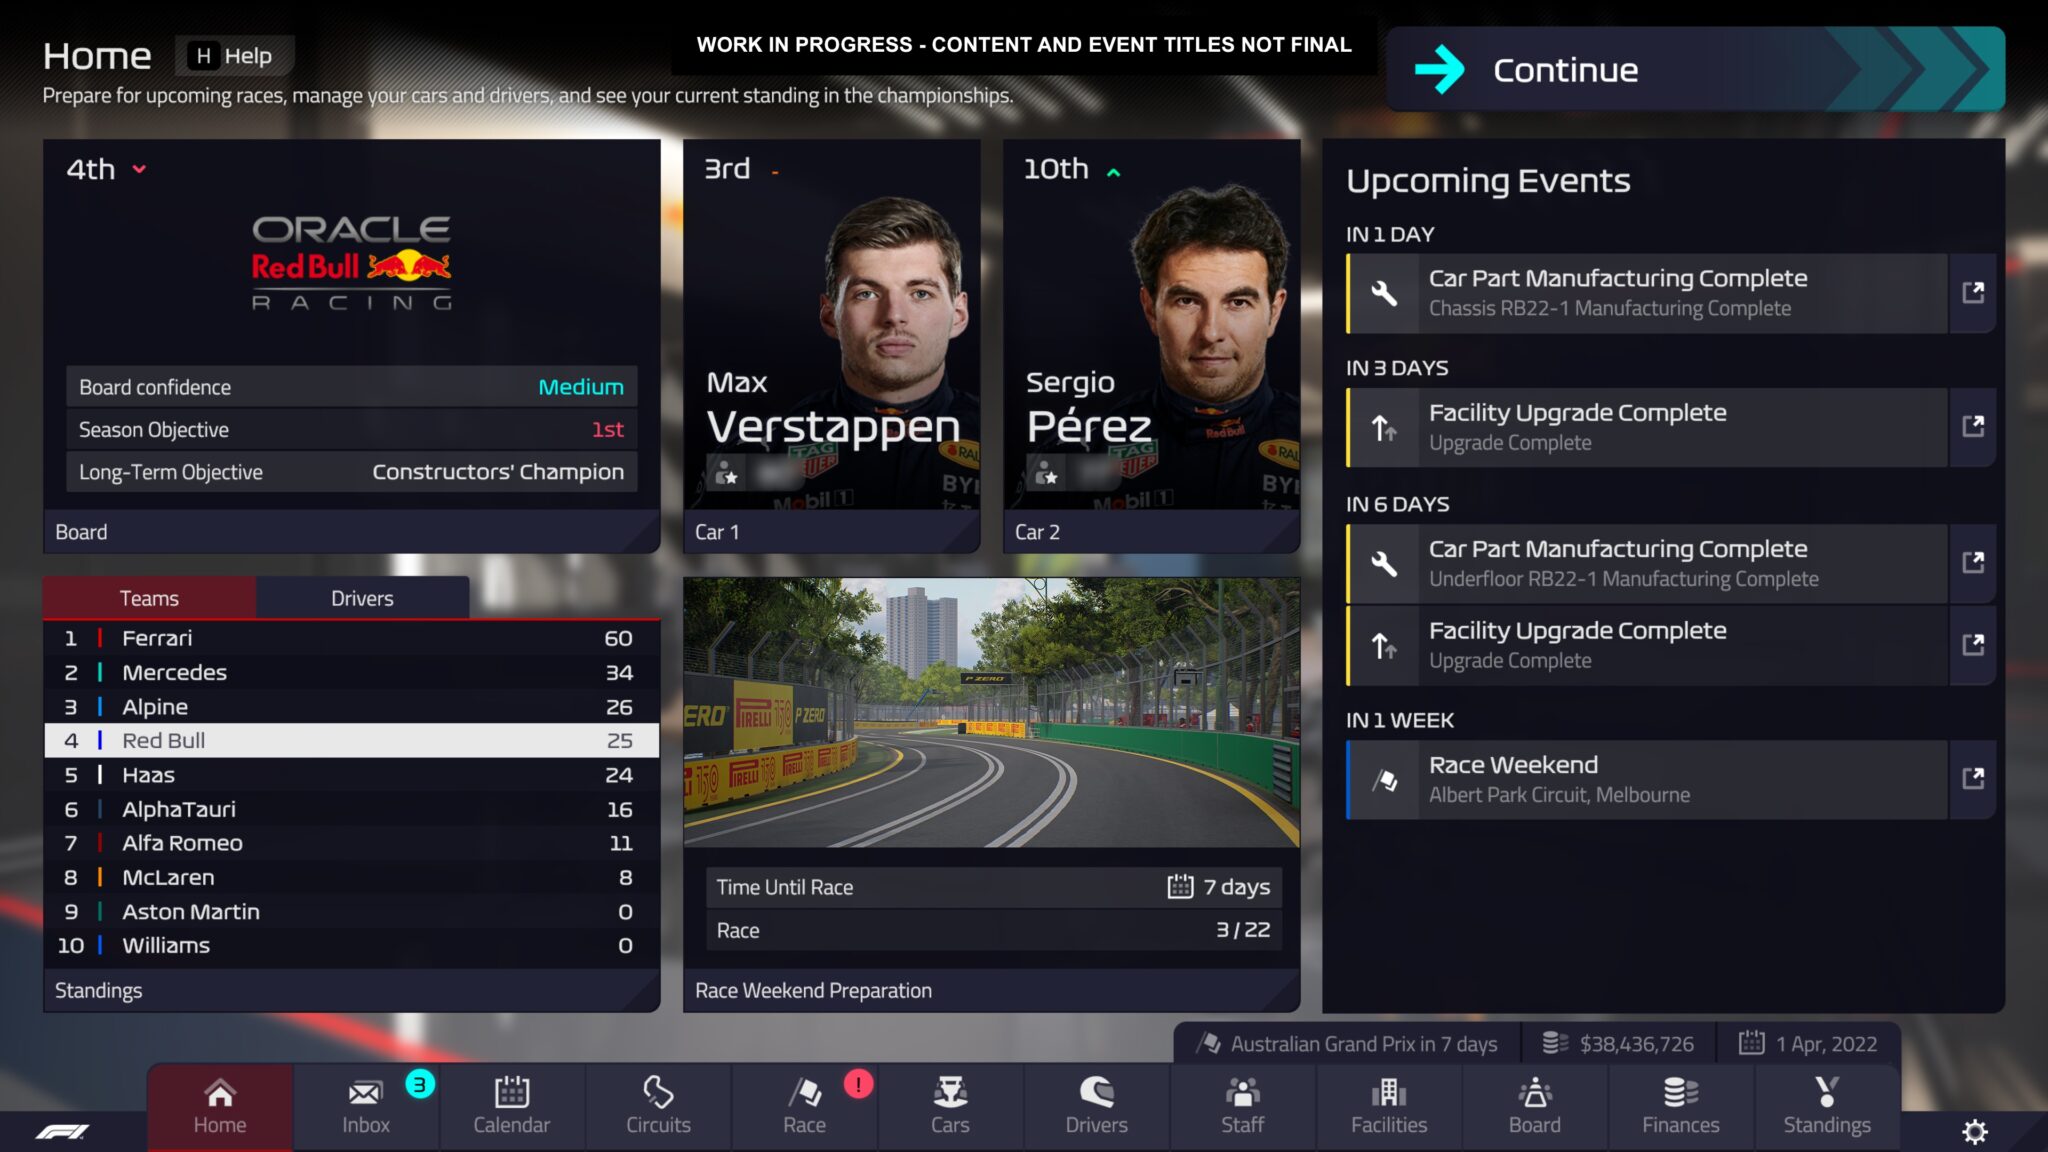 F1 Manager 2022 предлага добре структуриран интерфейс с автентичен вид на Формула 1.